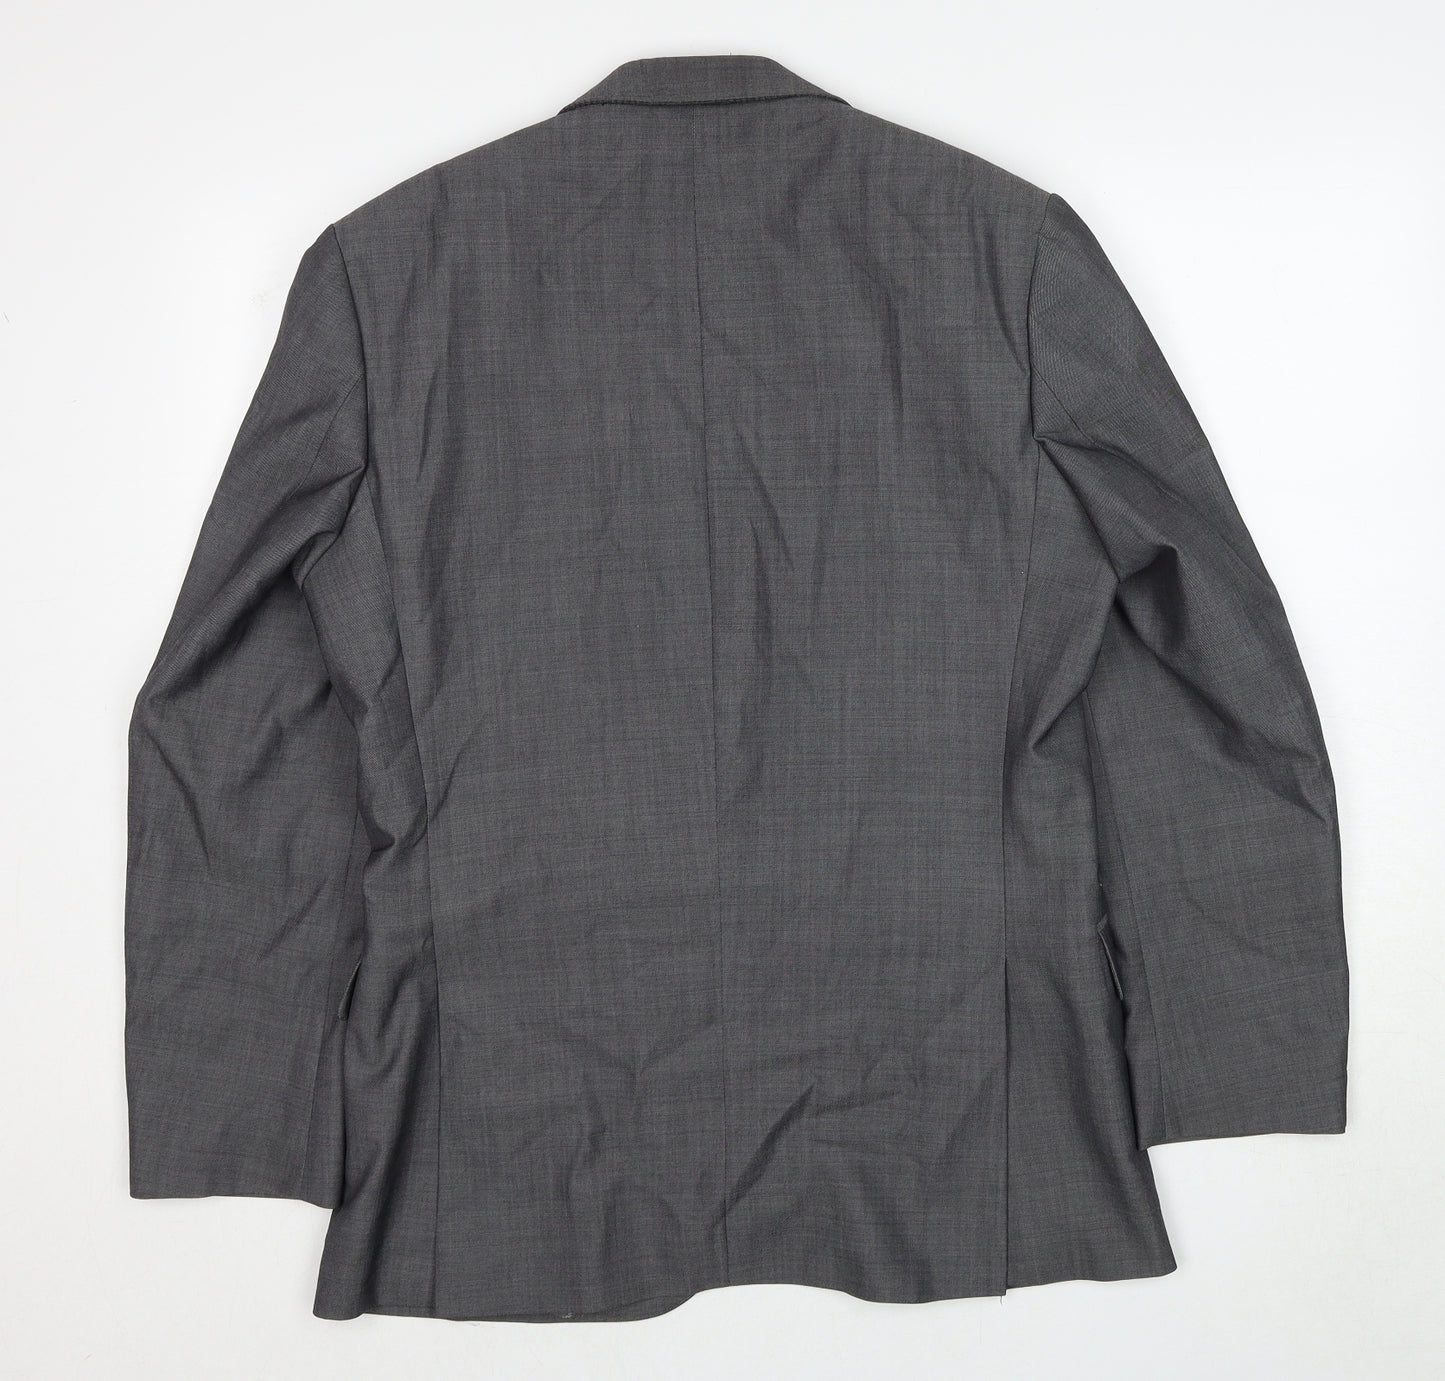 Pierre Cardin Mens Grey Wool Jacket Suit Jacket Size 38 Regular